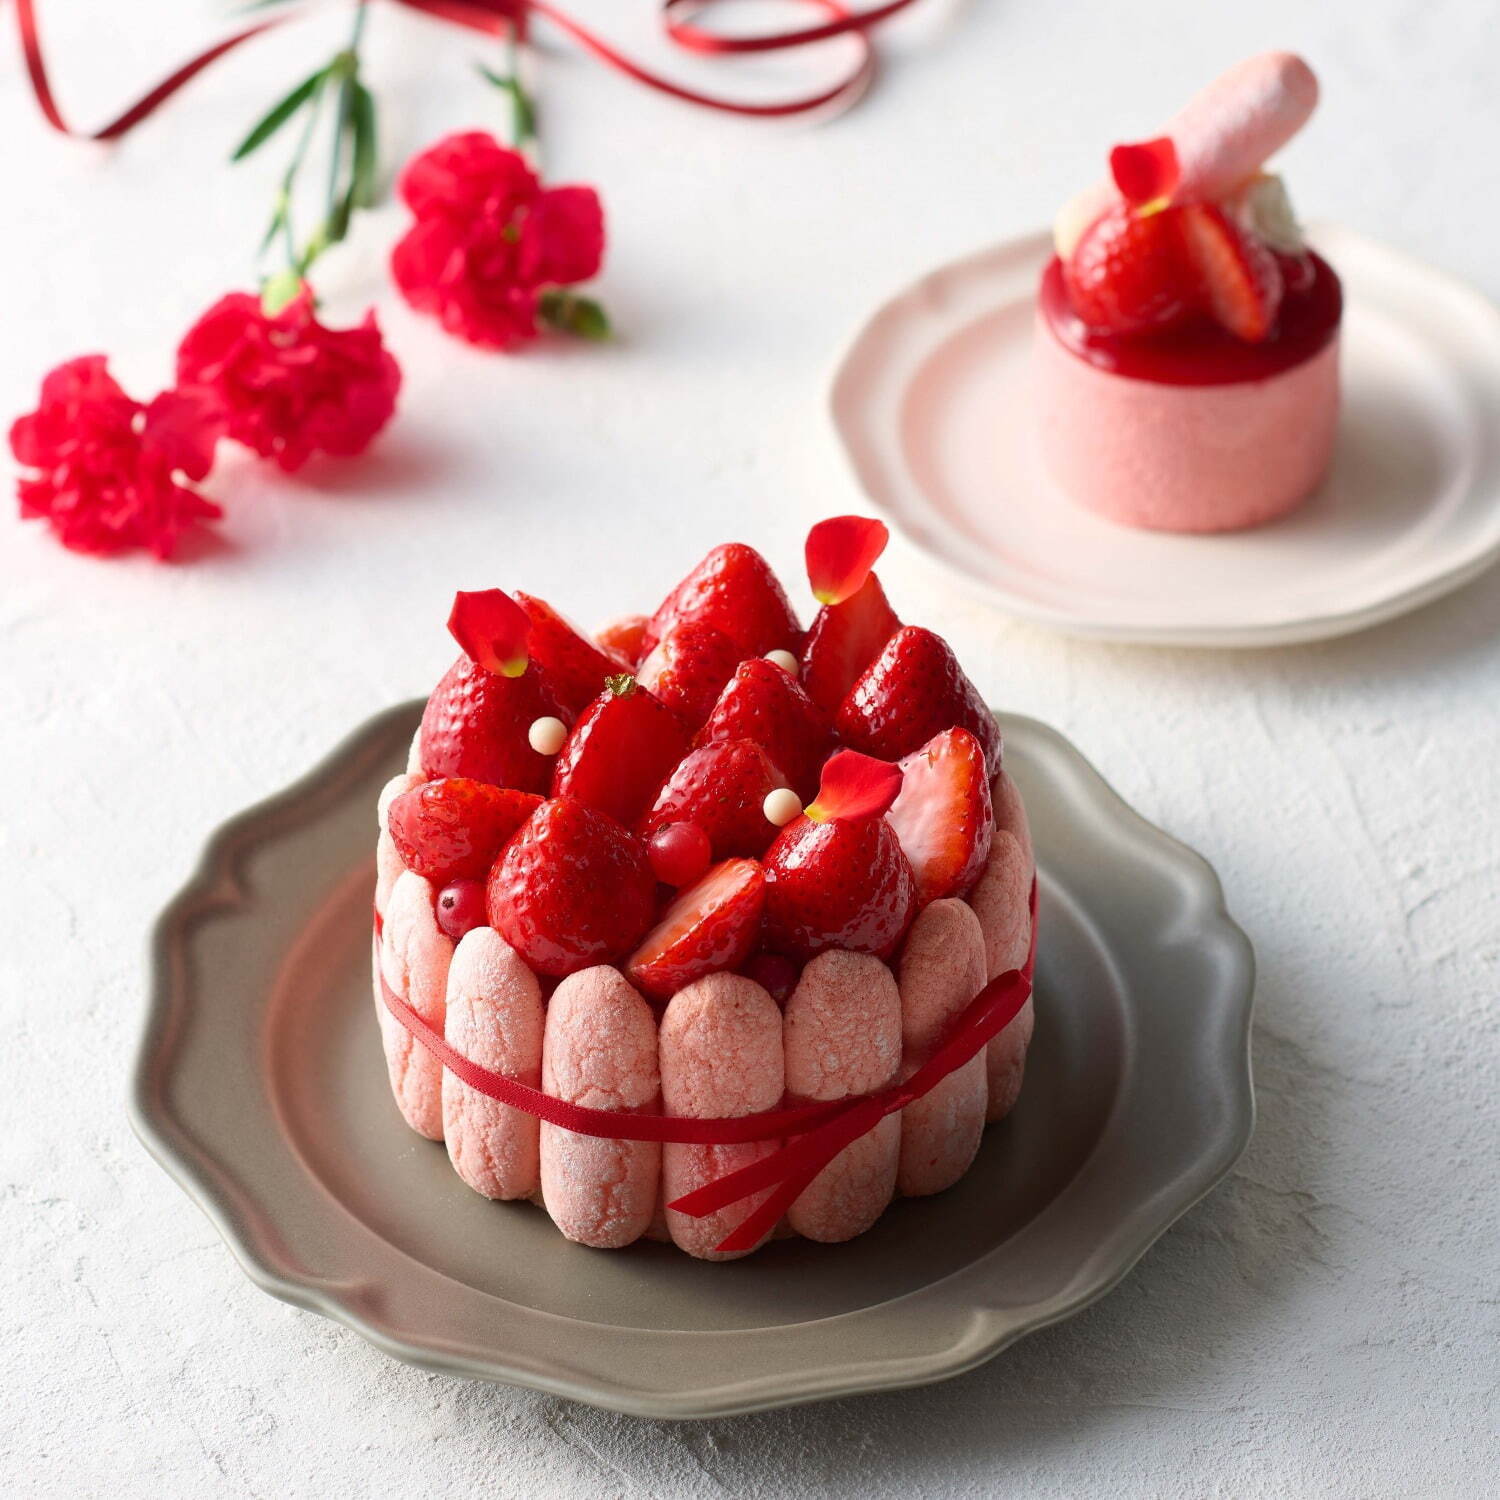 「春の花束- 苺とシャンパーニュのシャルロット-」
ホールケーキ 3,500円 / 小物ケーキ 800円